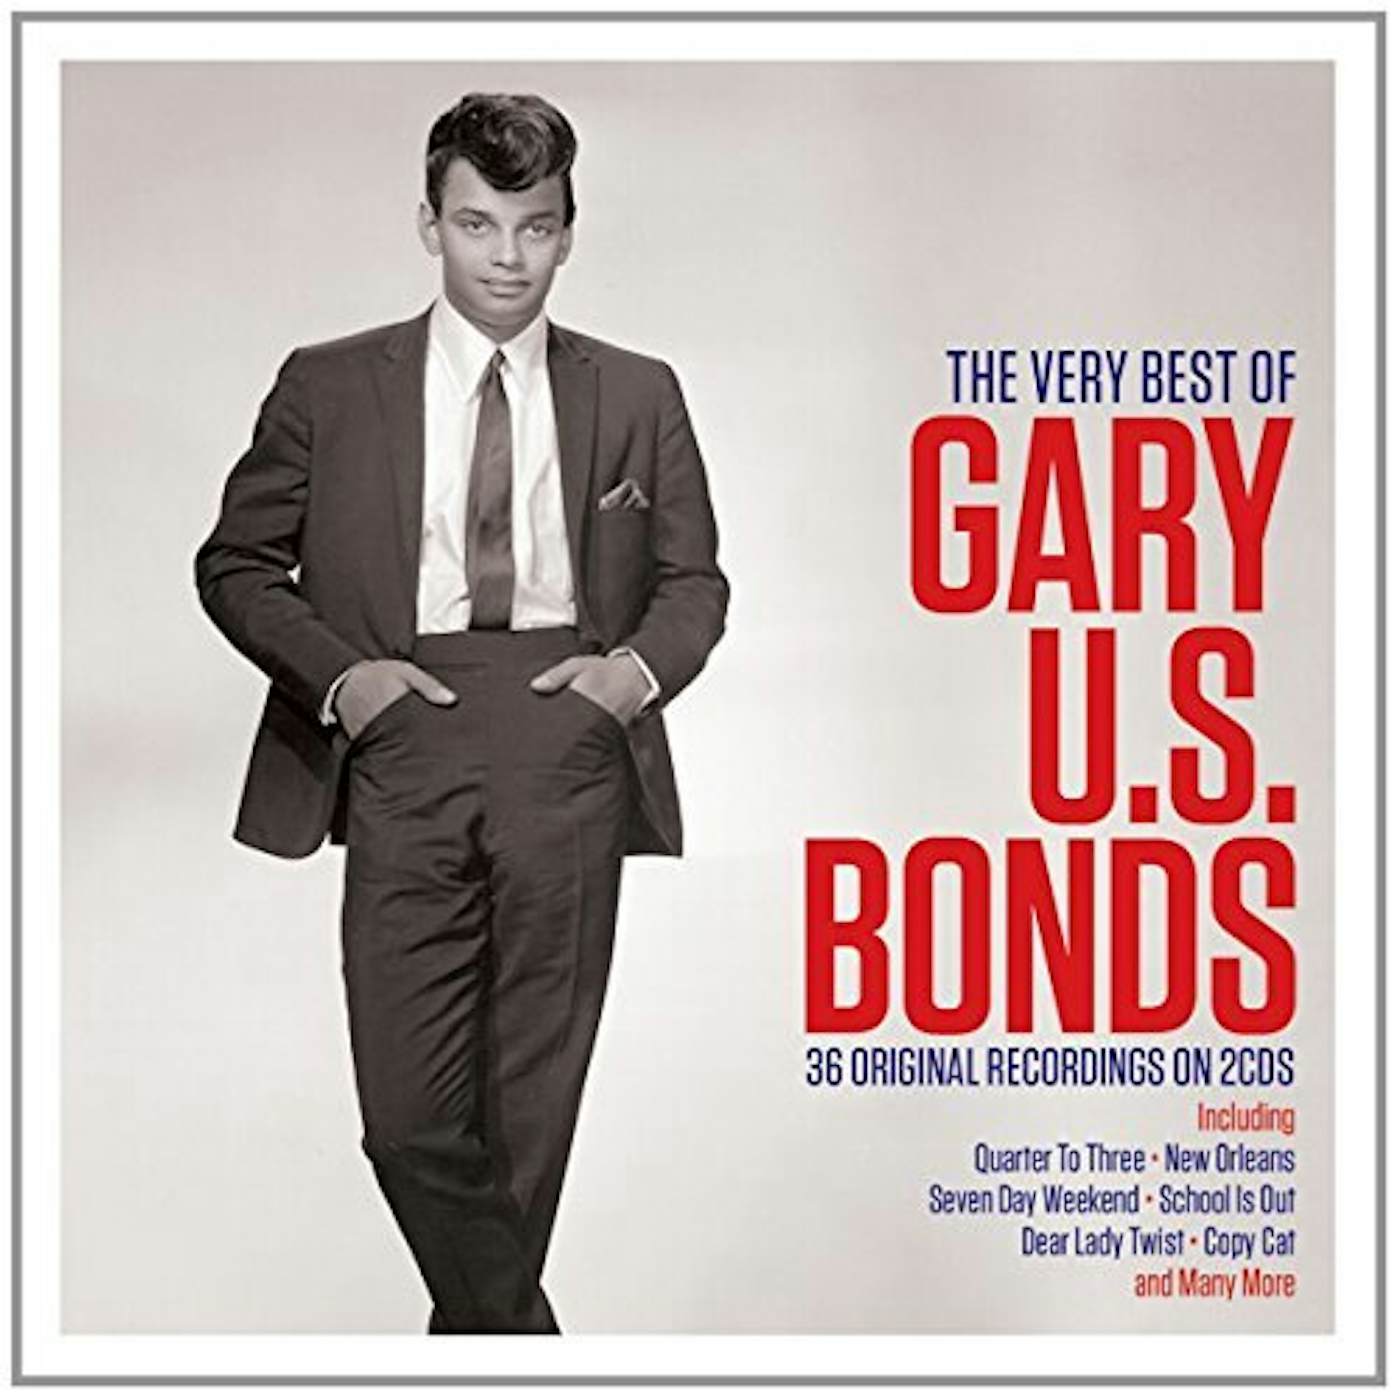 Gary U.S. Bonds VERY BEST OF CD